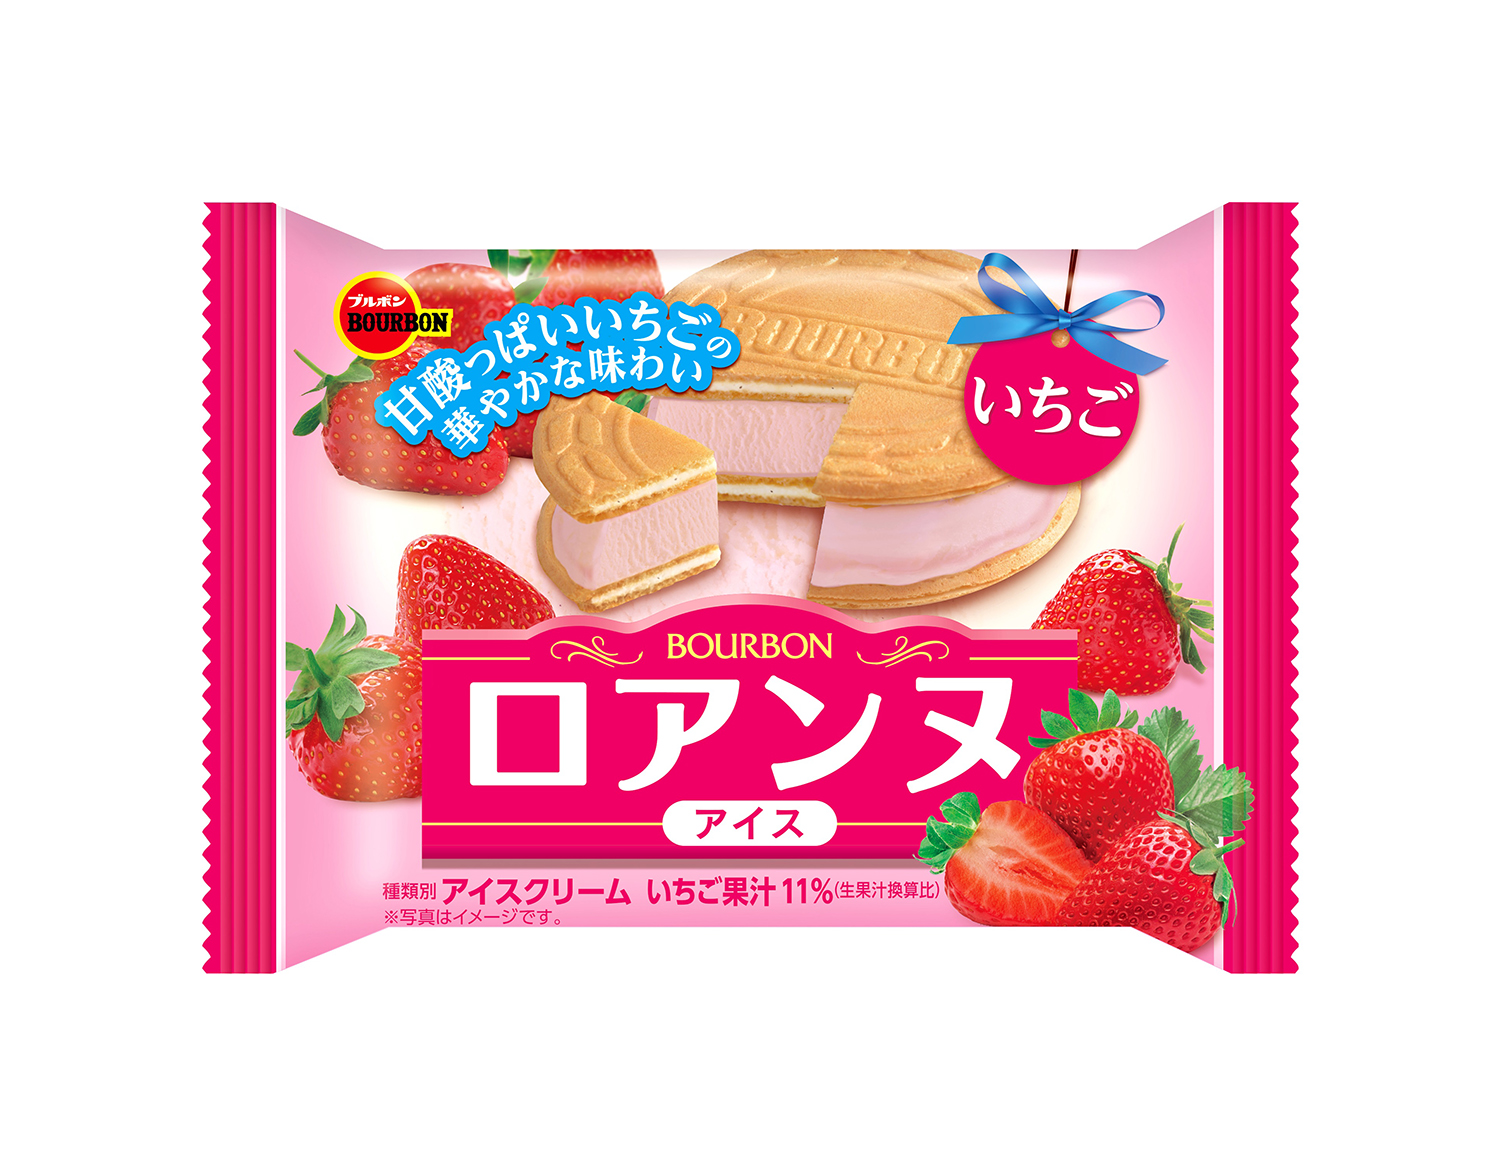 ブルボン いちごの華やかな味わいの お菓子アイス ロアンヌアイスいちご 新発売 Emo Miu エモミュー